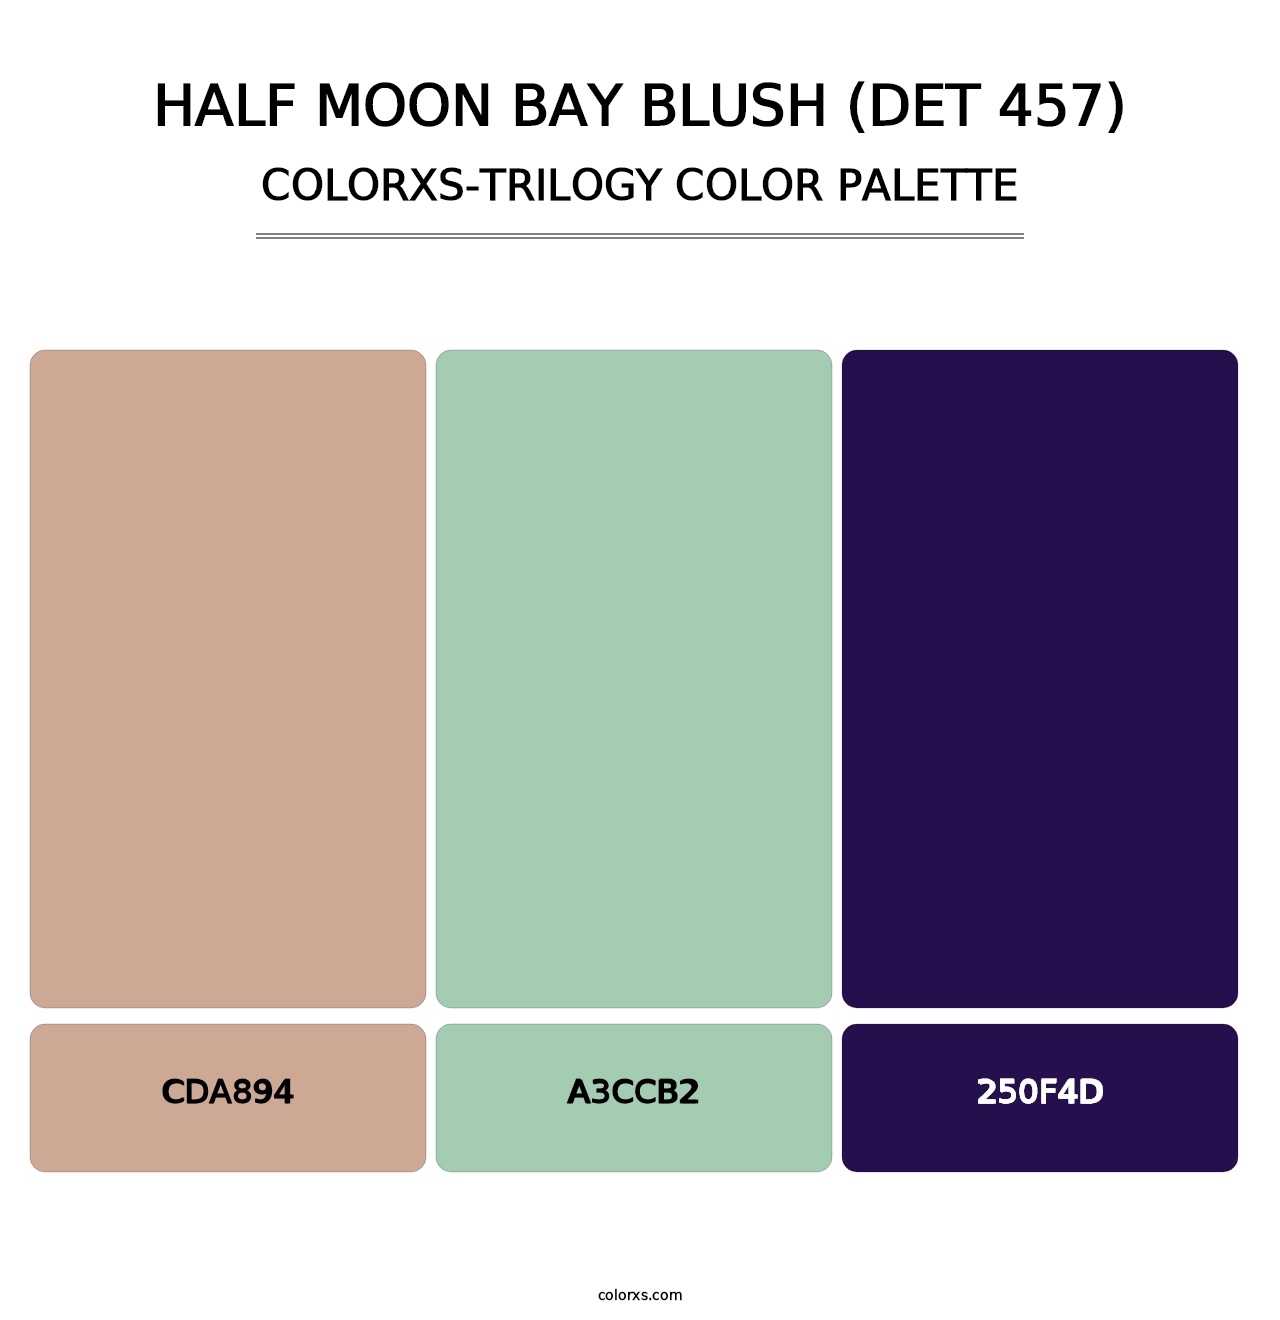 Half Moon Bay Blush (DET 457) - Colorxs Trilogy Palette